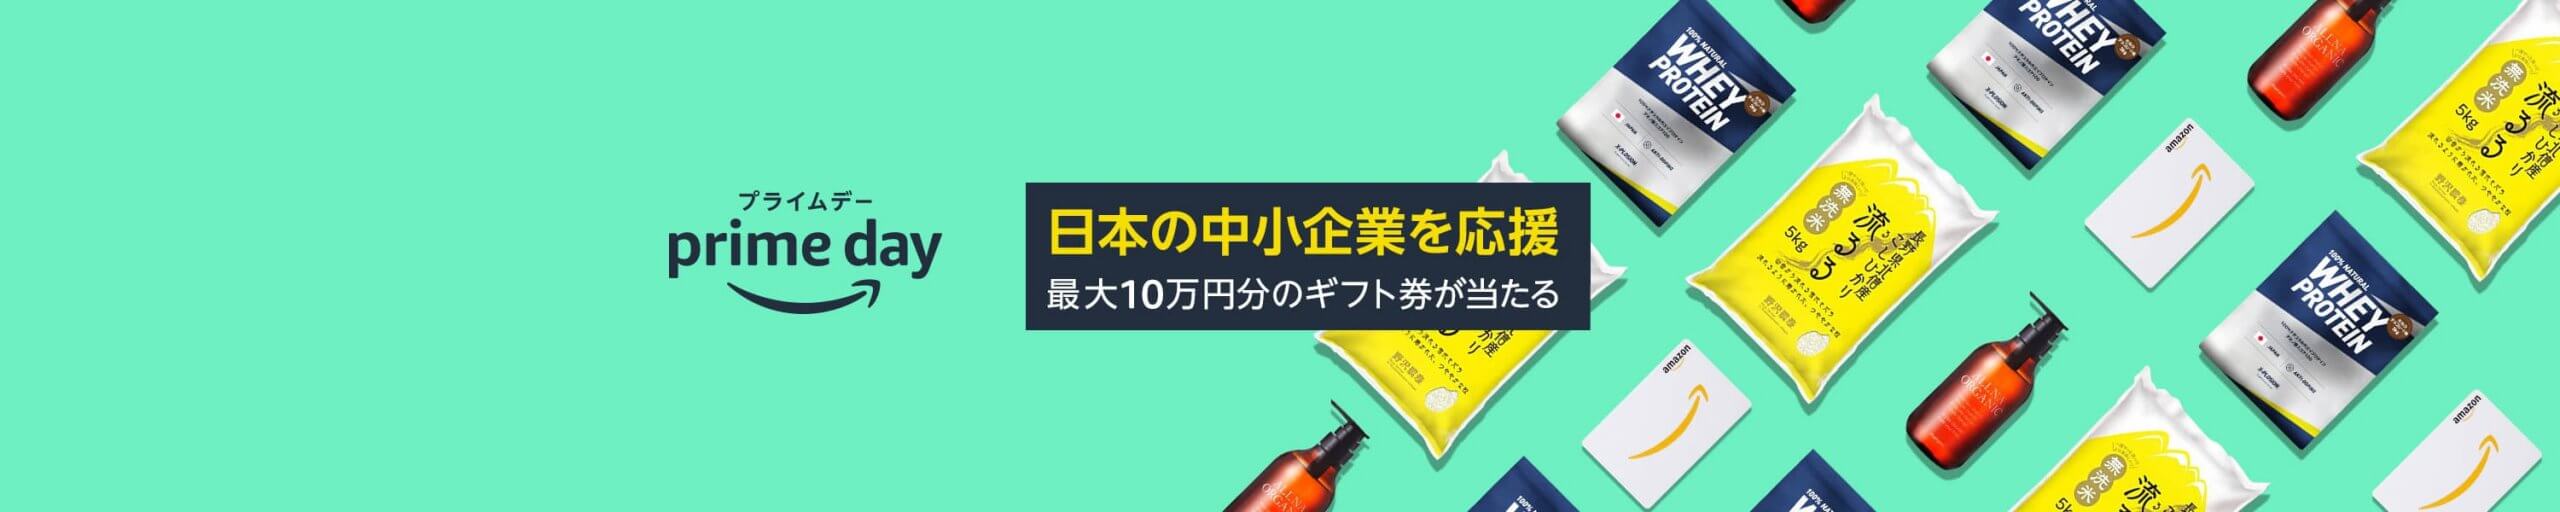 日本の中小企業応援キャンペーン